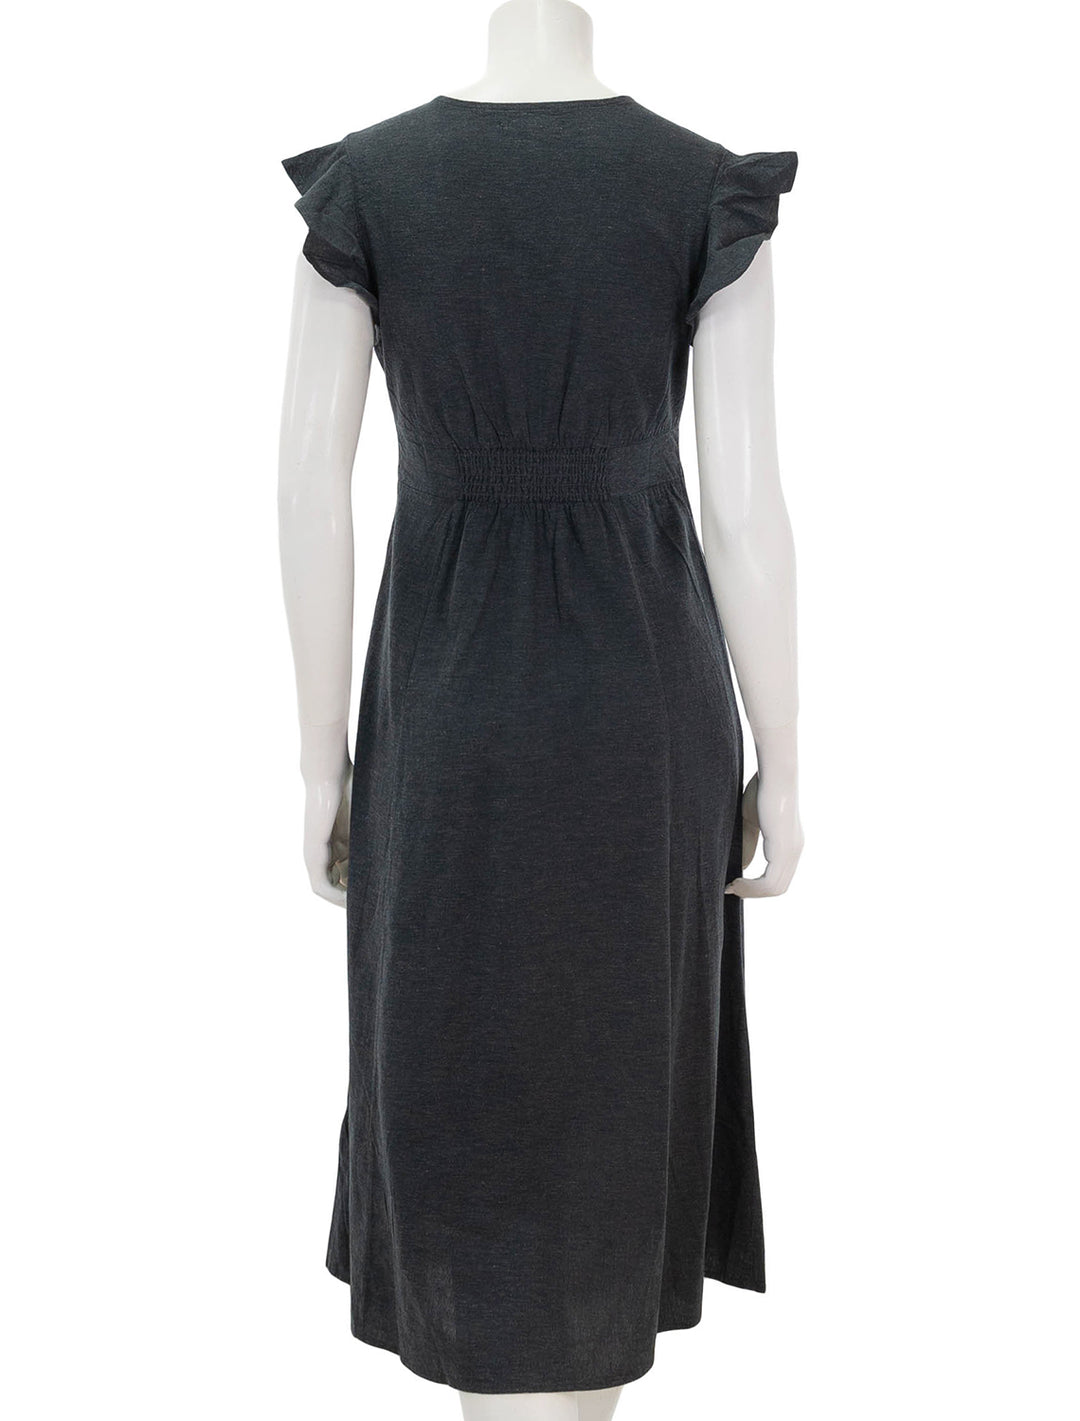 back view of camila midi dress in black